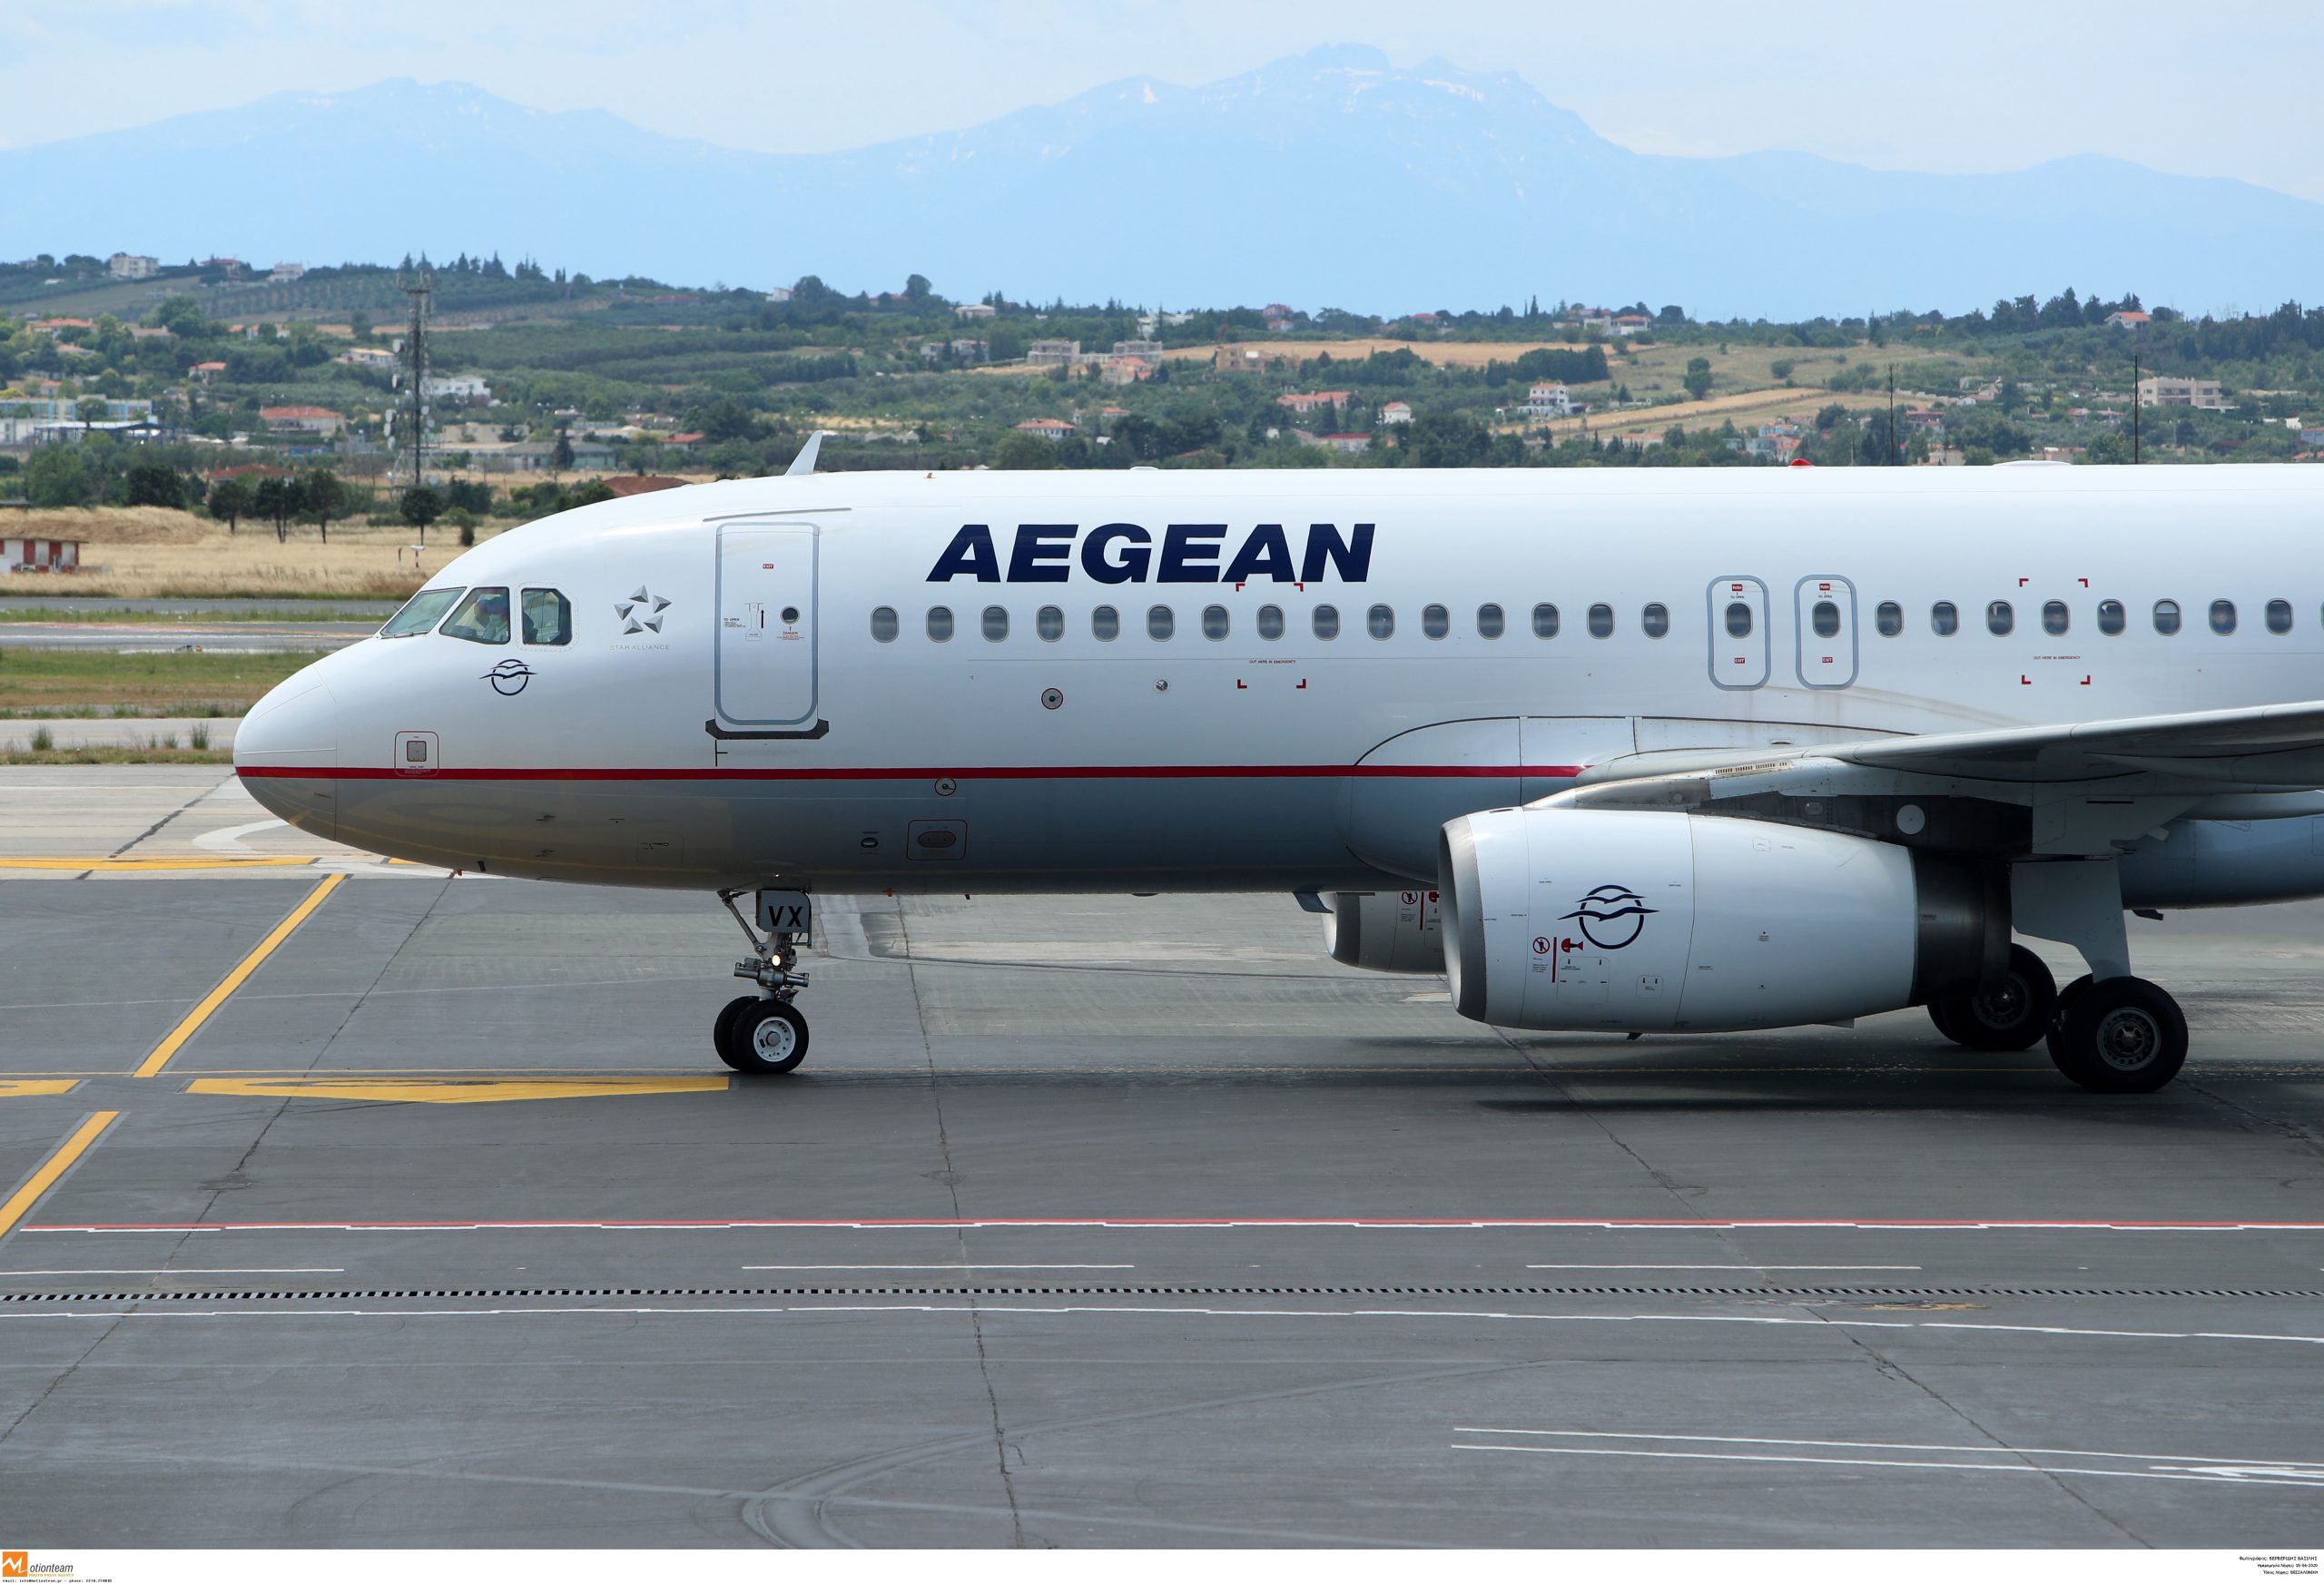 Νέα εποχή! Η AEGEAN καλωσορίζει το Wi-Fi στις πτήσεις της!